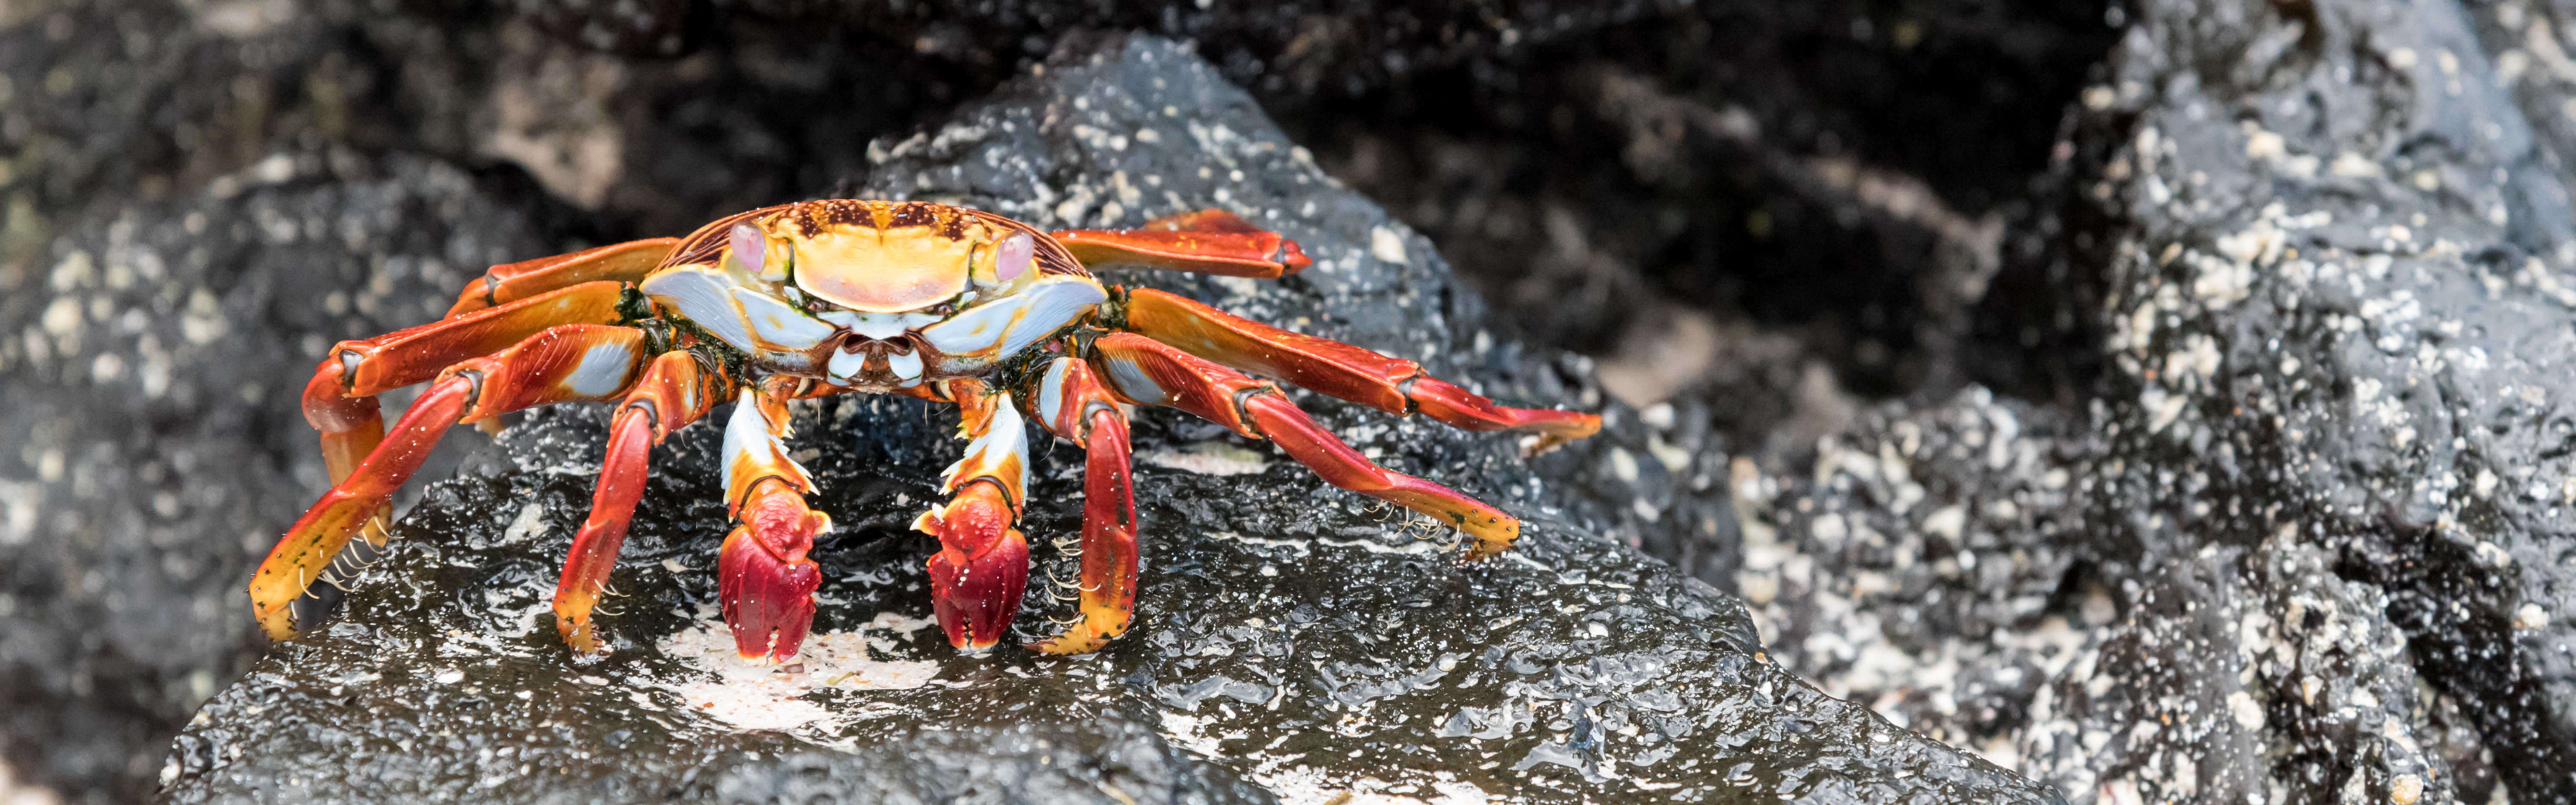 red rock crab galapagos